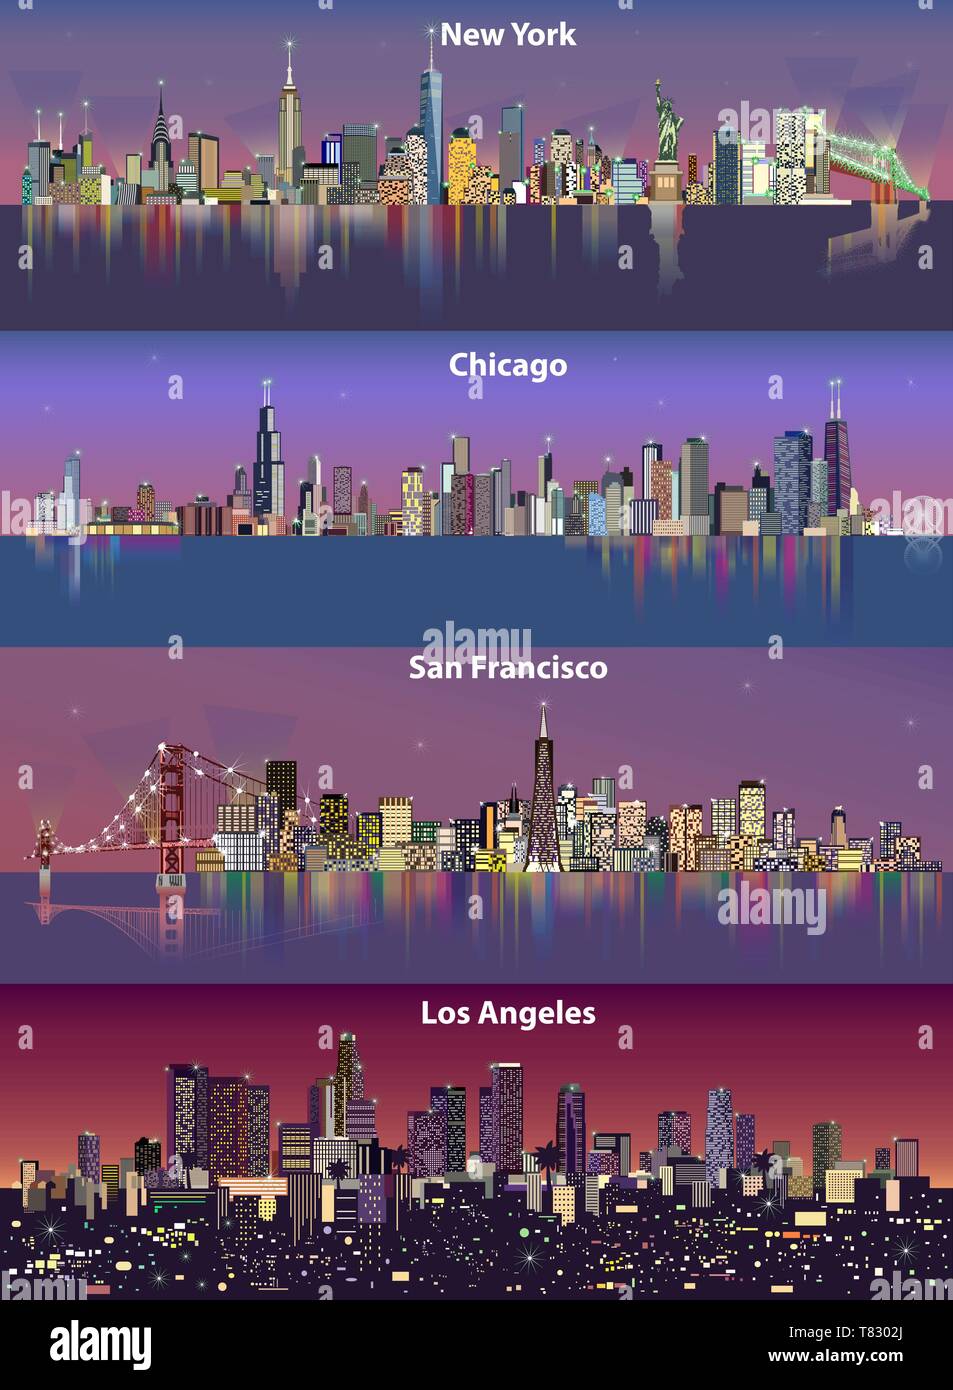 Abstract vector illustrations de United States ville (New York, Chicago, San Francisco et Los Angeles) dans la nuit avec la carte Illustration de Vecteur